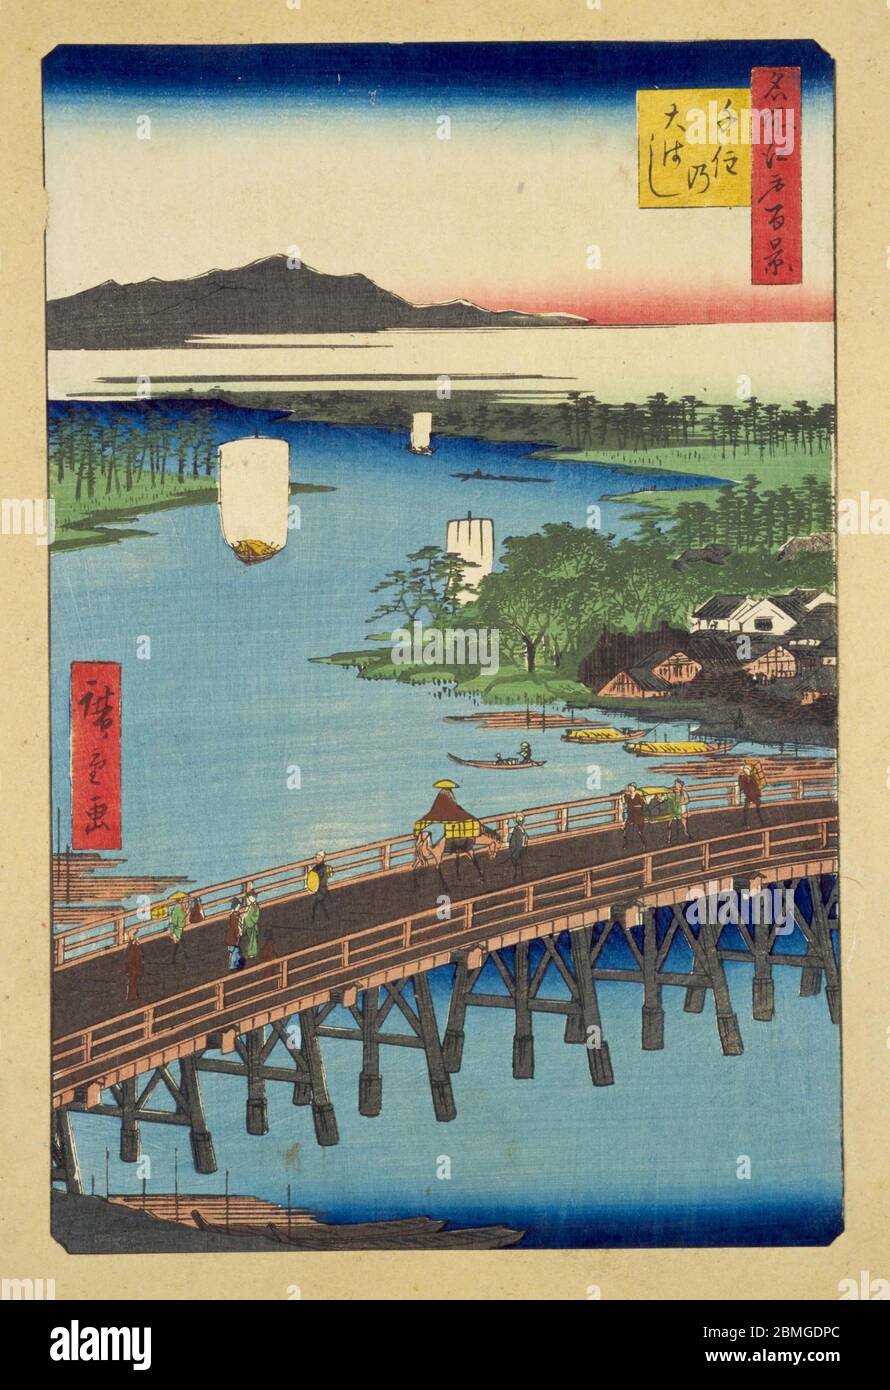 [ 1850er Japan - Arakawa River ] - Menschen, die die Senju Ohashi Brücke über den Arakawa River in Edo (aktuelle Tokyo), 1856 (Ansei 3). Dieser Holzschnitt ist Bild 103 in hundert berühmten Ansichten von Edo (名所江戸百景, Meisho Edo Hyakkei), einer Serie von Ukiyoe Künstler Utagawa Hiroshige (歌川広重, 1797–1858) erstellt. Es ist eine von 20 Winterszenen der Serie. Titel: Senju Ohashi (千住の大はし, Senju no ohashi) Vintage Ukiyoe Holzschnitt aus dem 19. Jahrhundert. Stockfoto